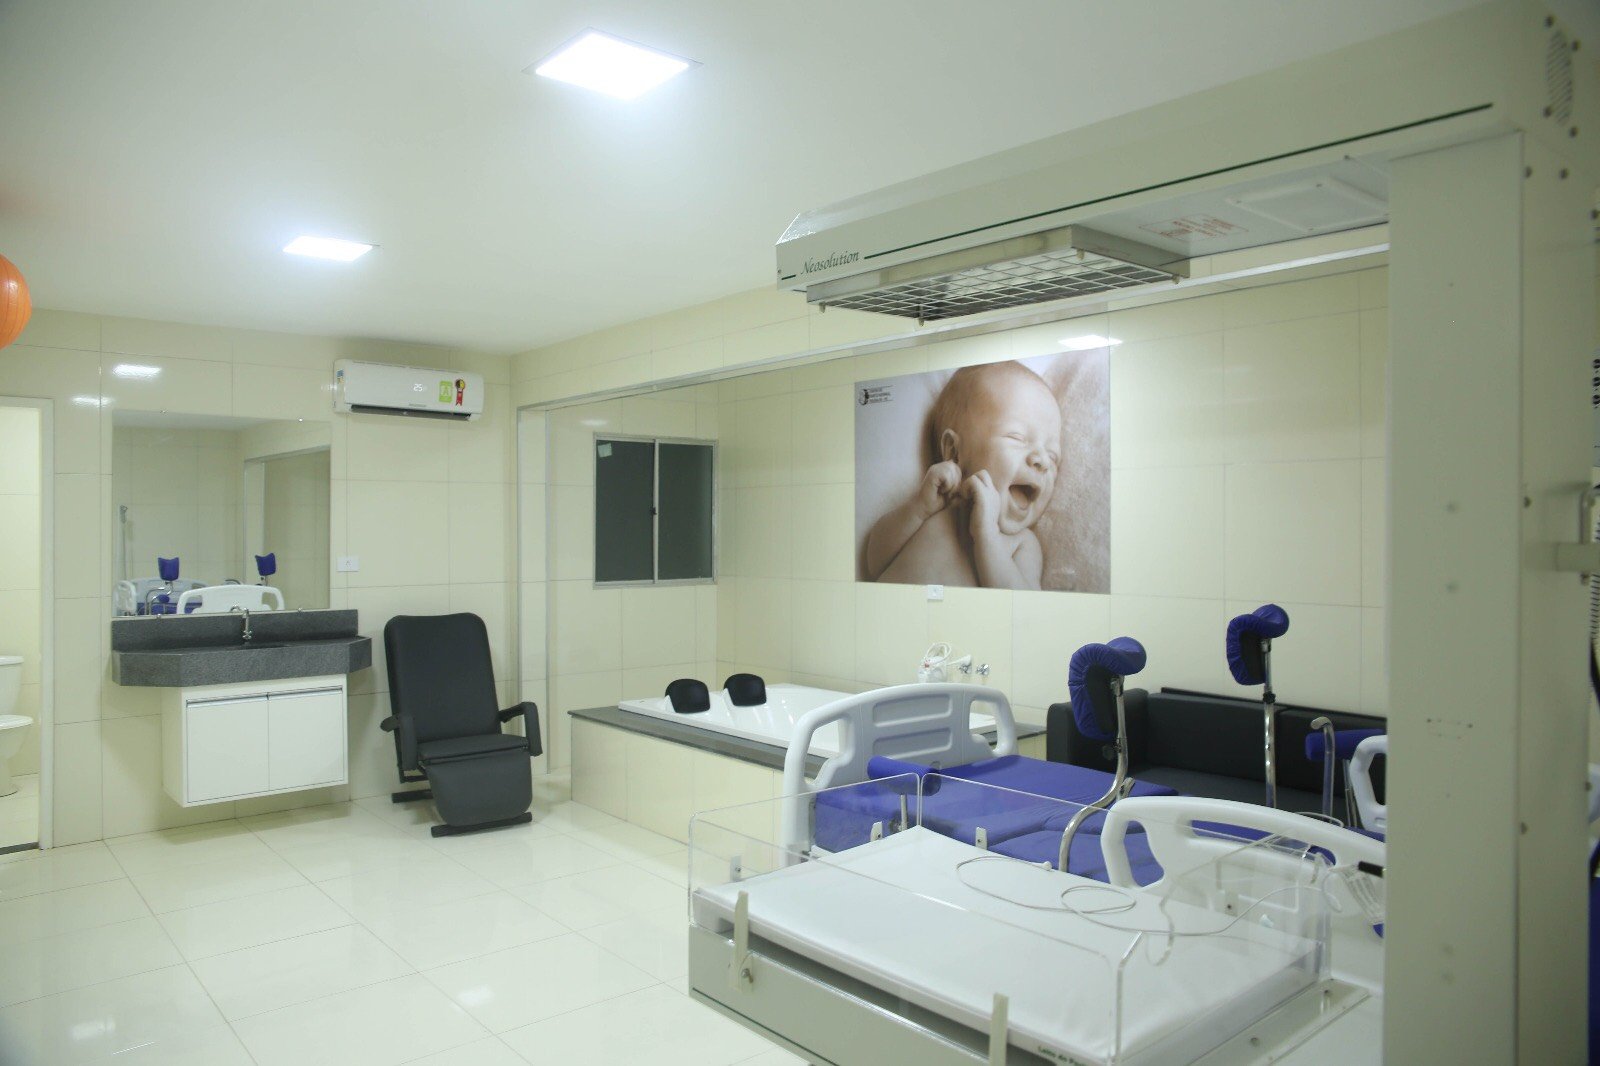 Centro de Parto Normal de Paudalho é único no modelo peri-hospitalar habilitado pelo Ministério da Saúde, em PE